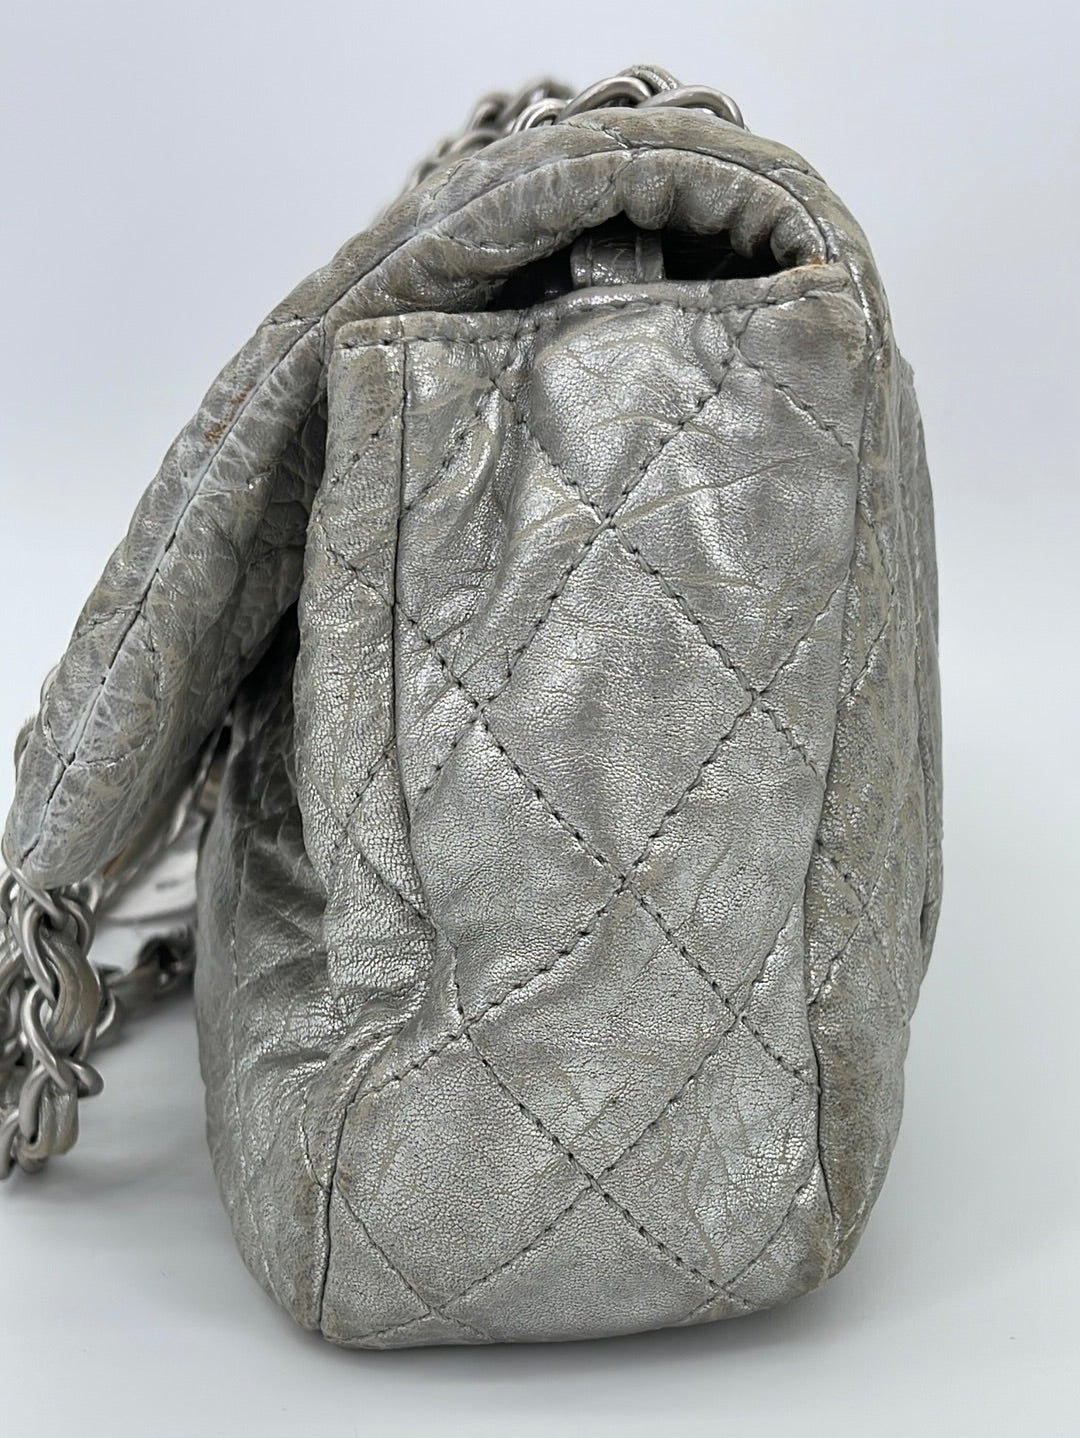 PRELOVED Vintage CHANEL Single Flap Quilted Silver Shoulder Bag 14212929 050223